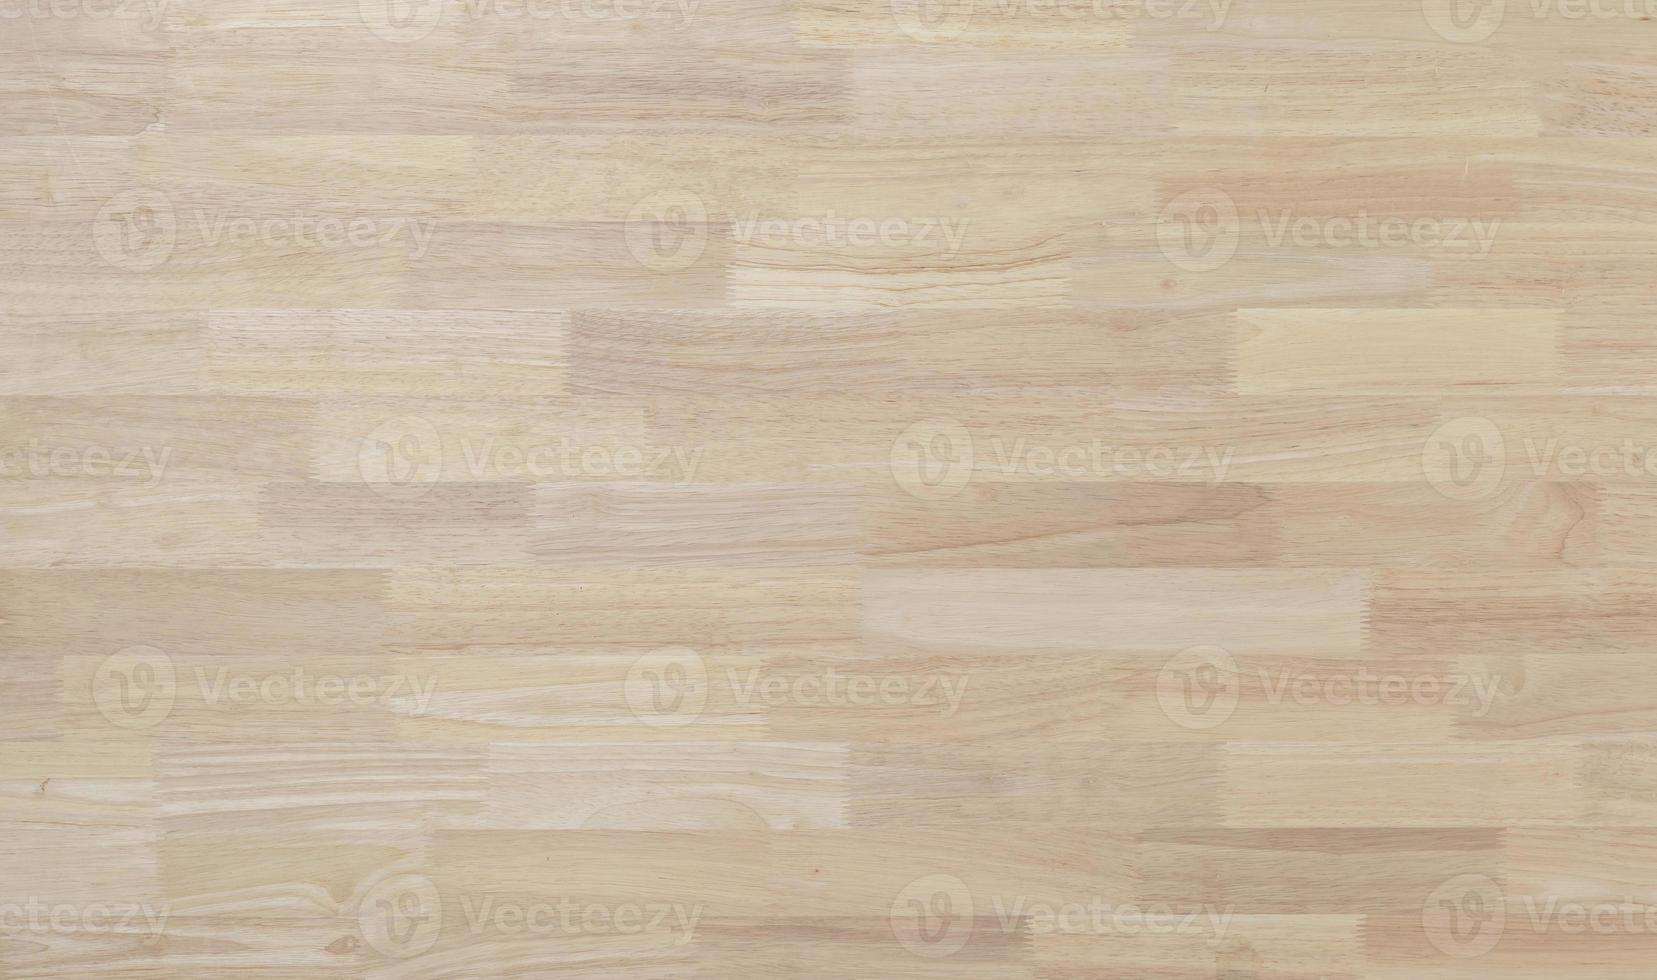 Đón nhận hình nền gỗ màu nâu nhạt đầy tinh tế với chất liệu gỗ đẹp và sáng tạo. Thiết kế độc đáo và chi tiết vân gỗ tuyệt vời mang lại cho căn phòng của bạn một không gian ấm cúng và đẳng cấp. Hãy truy cập để khám phá chi tiết bức hình này.